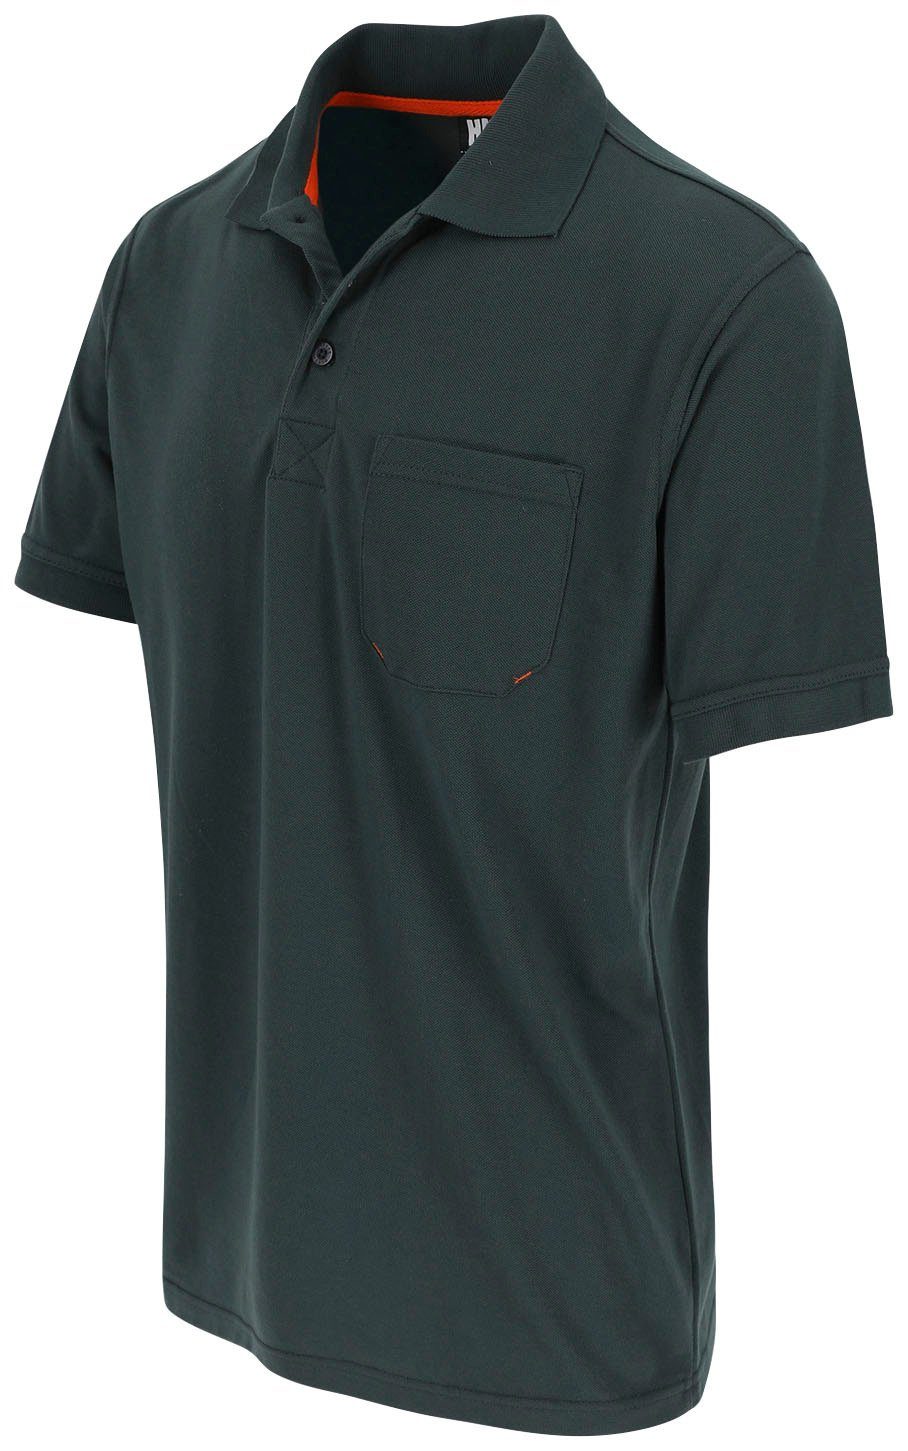 Poloshirt Rippstrick-Kragen und Leo Polohemd verschiedene 1 grün Farben Bündchen, Herock Kurzärmlig Brusttasche,